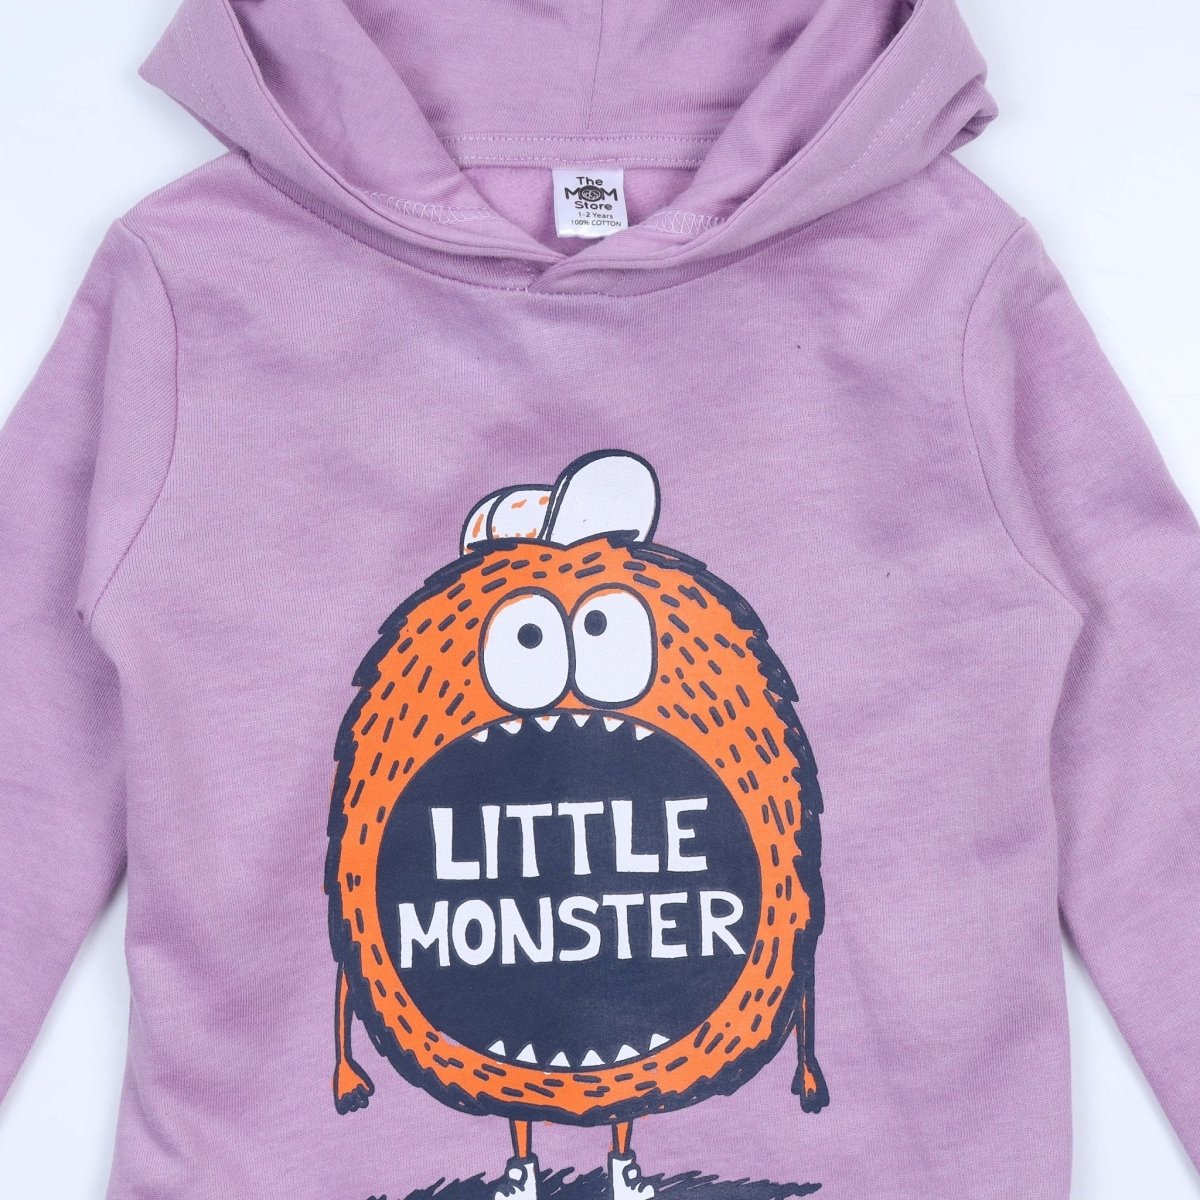 Little Monster Hooded Sweatshirt - KS-LTMNS-0-6